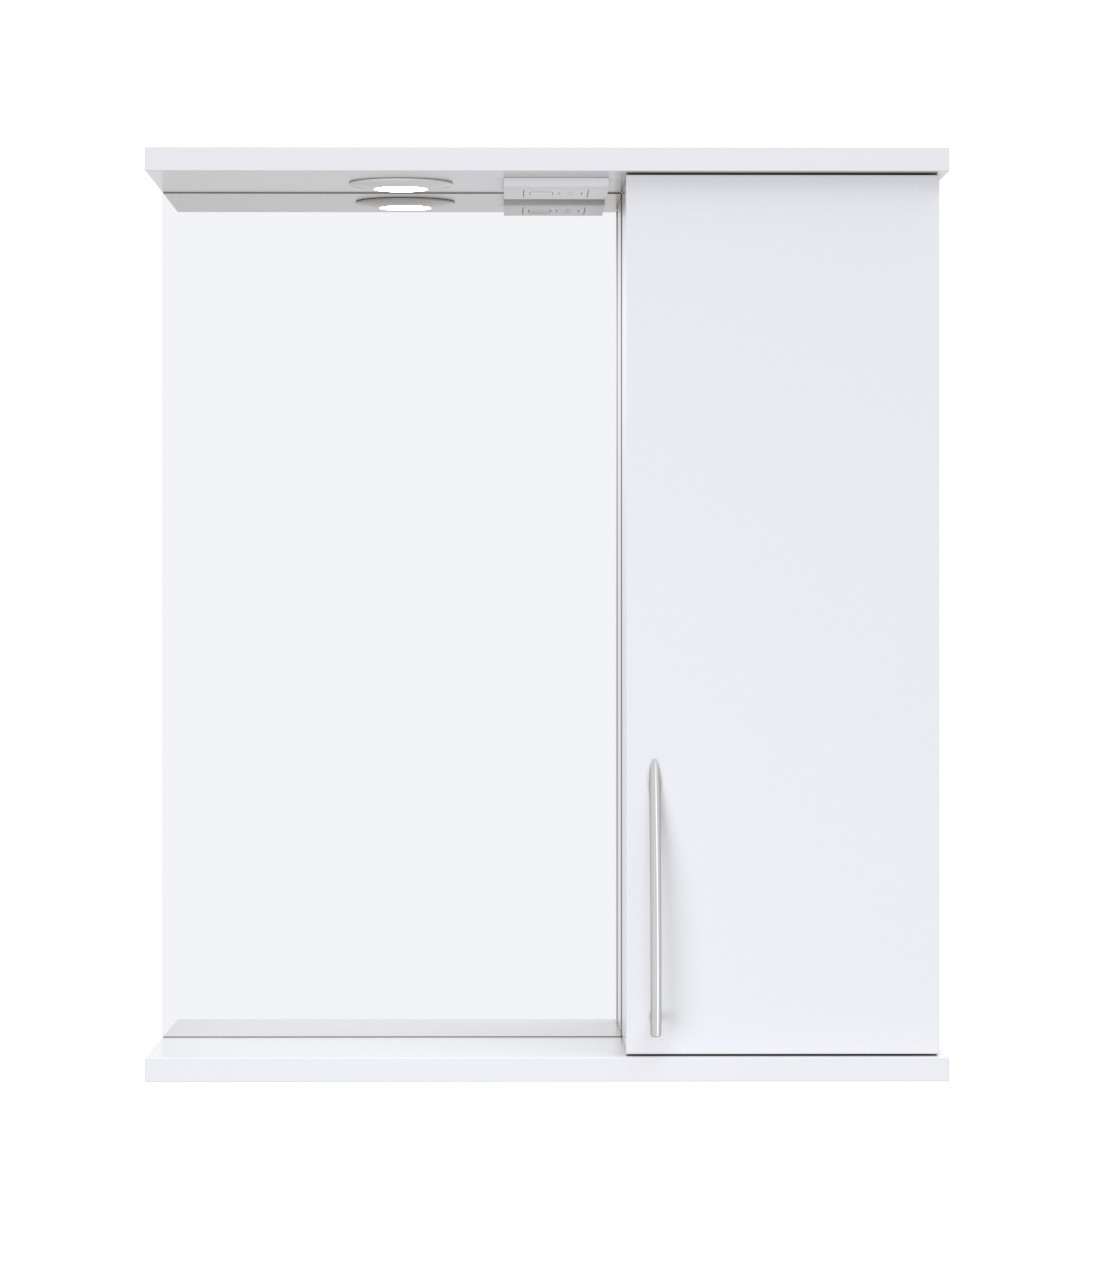 Шкаф зеркальный подвесной Краков с подсветкой 50x72 см цвет белый